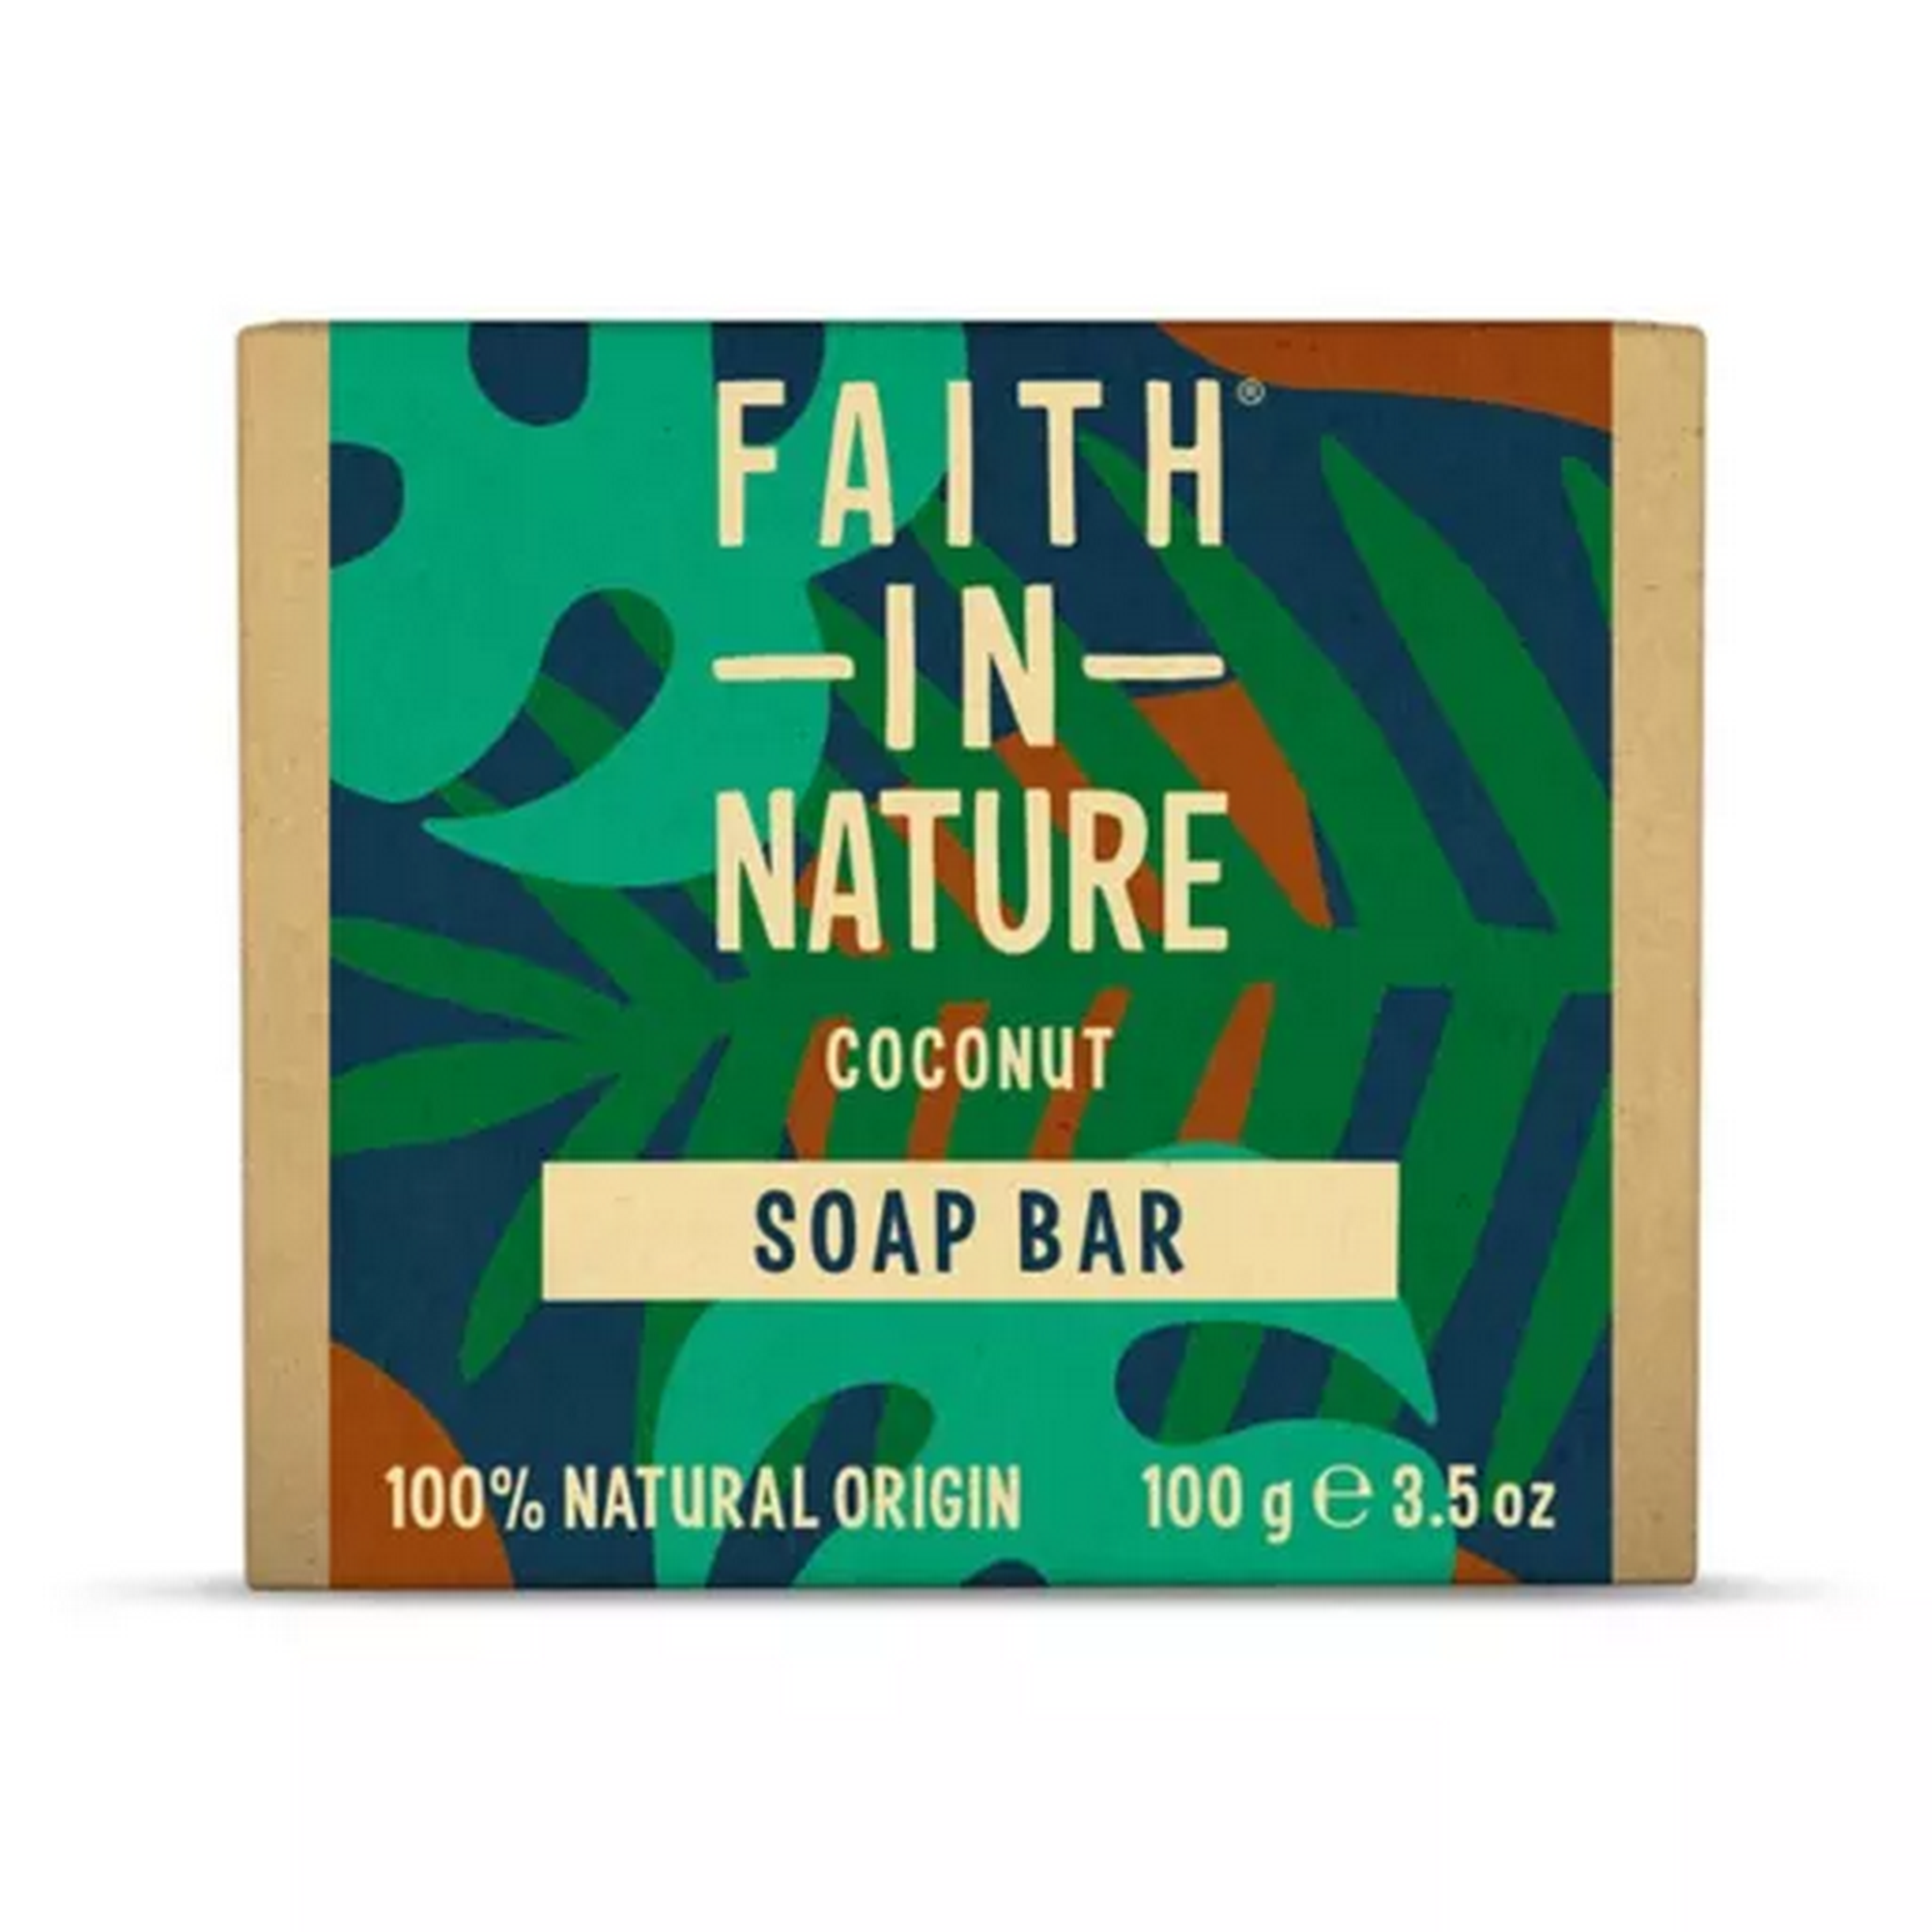 Faith in Nature Bar Soap 100g Coconut